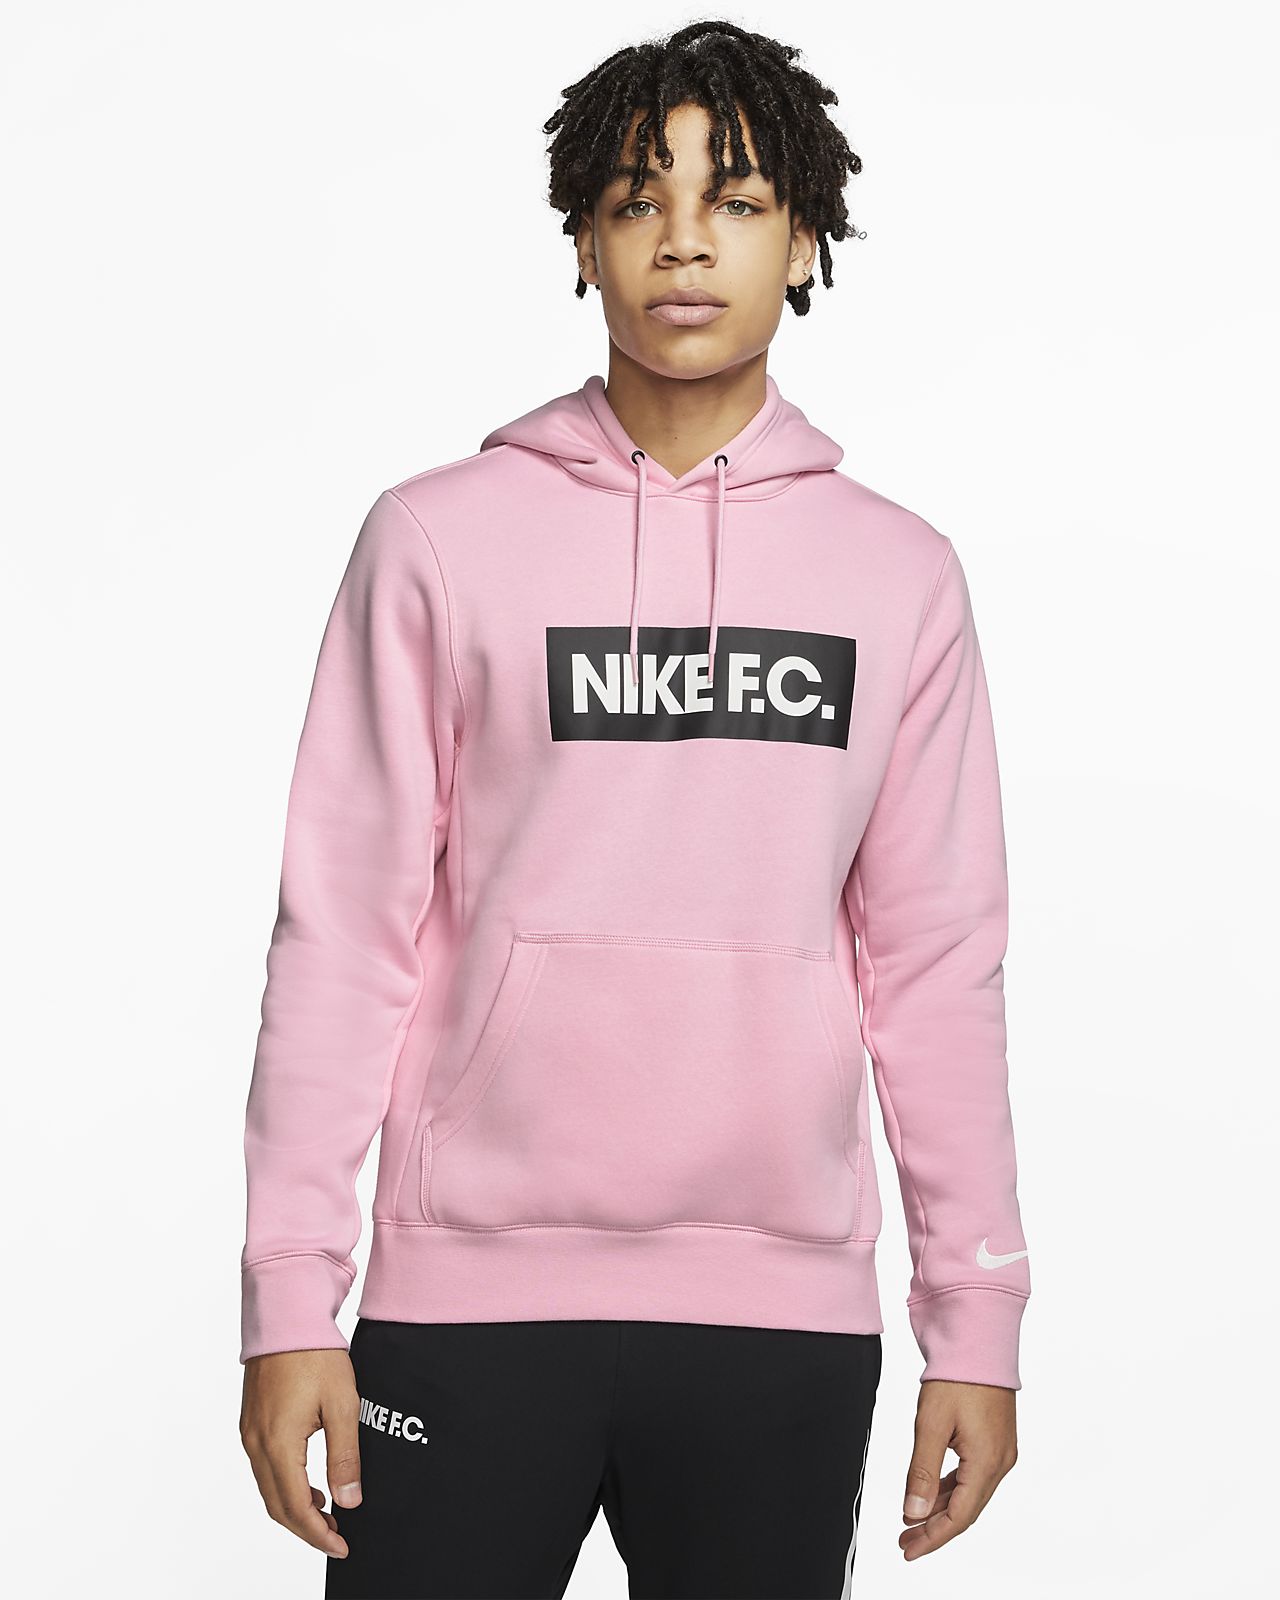 Pullover Fleece Football Hoodie. Nike GB